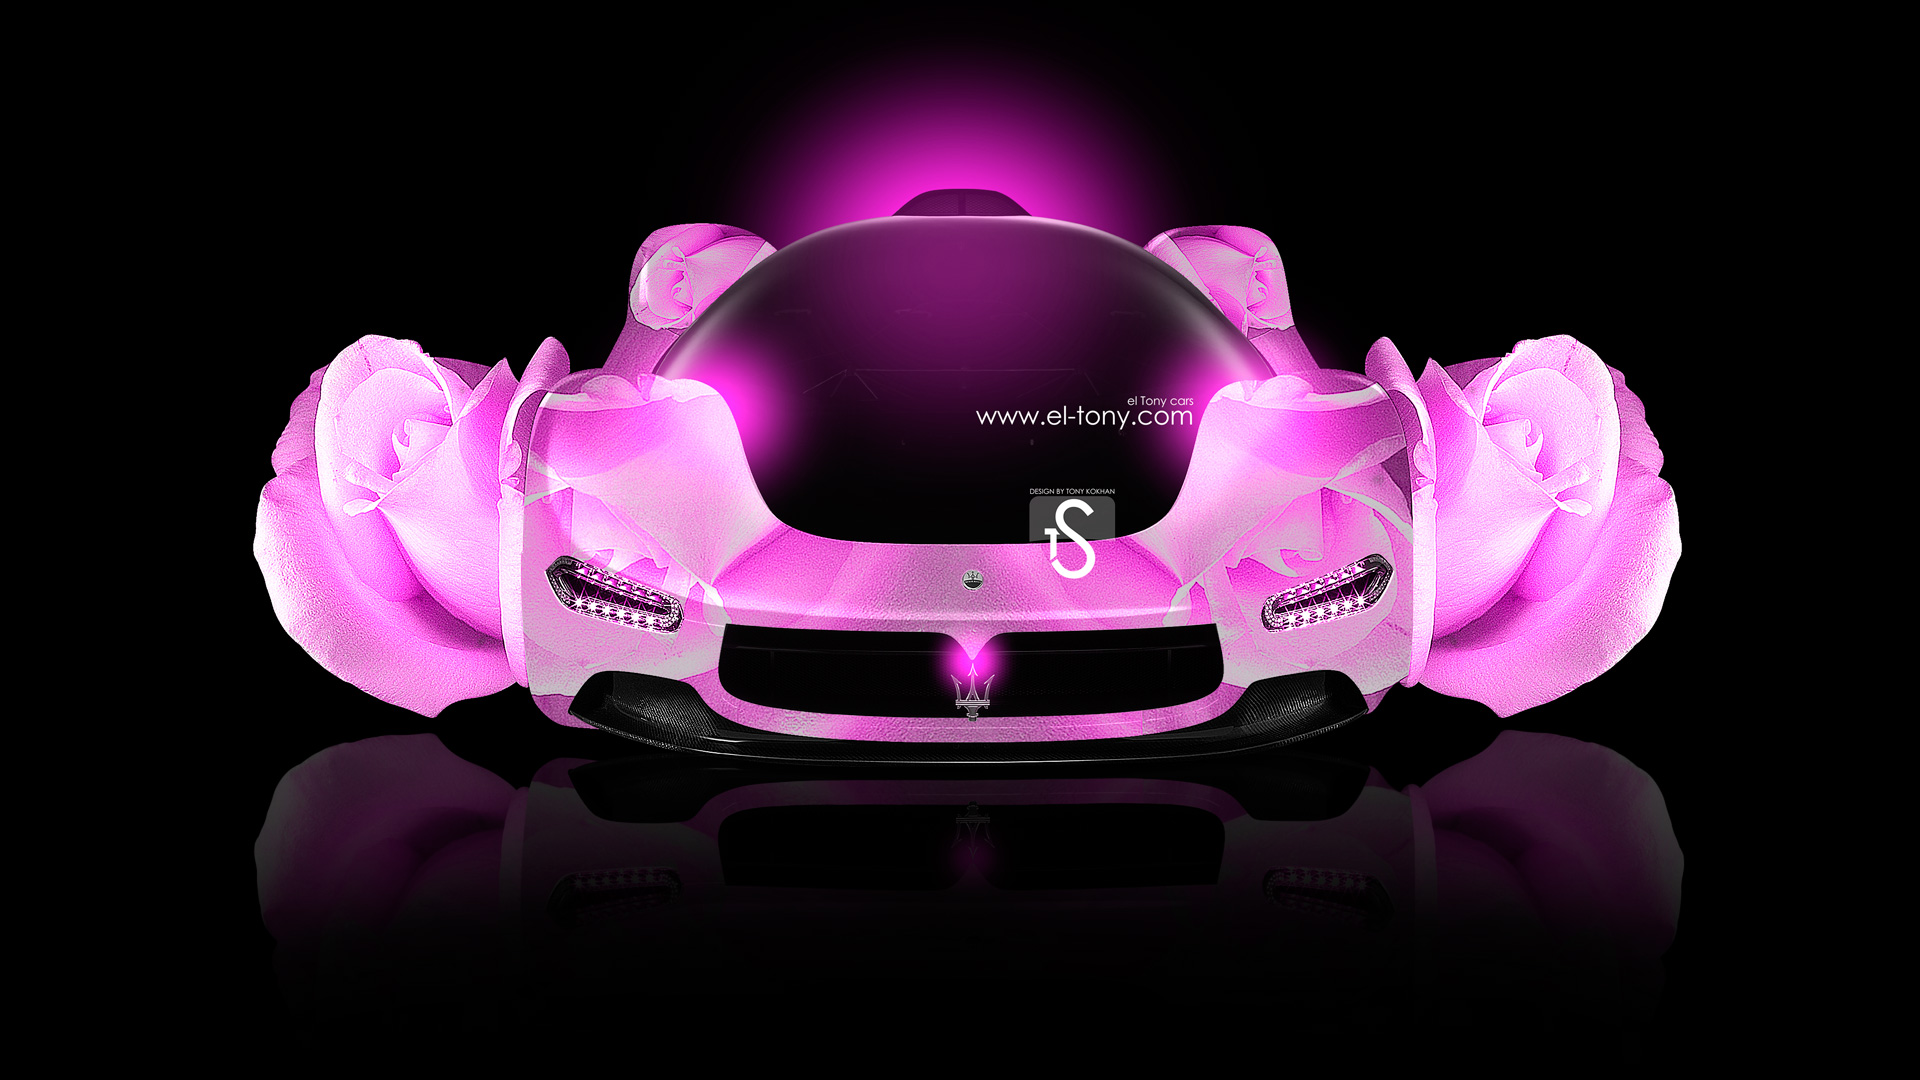 Maserati Pininfarina Fantasy Rose Car El Tony